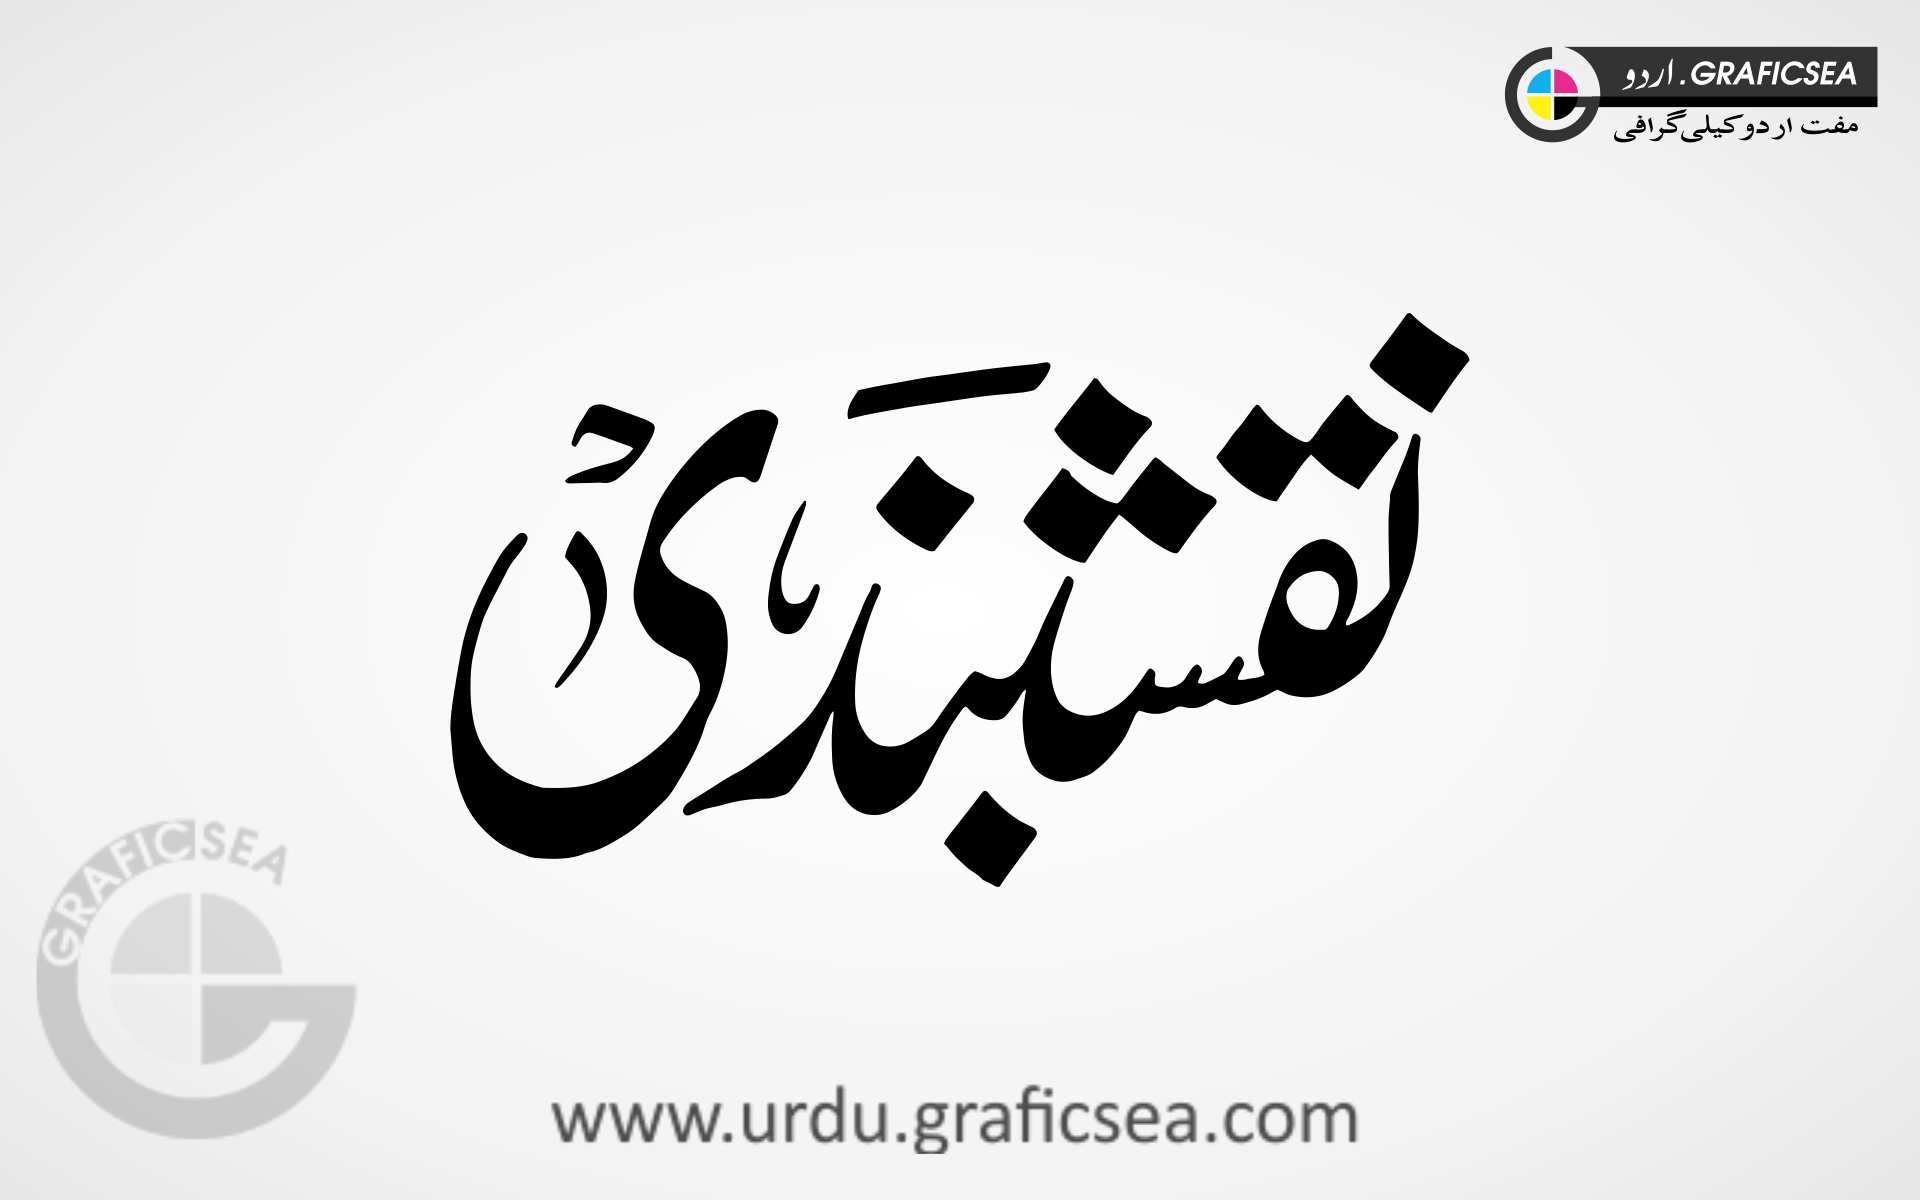 Nastaliq Naqashbani Word Urdu Calligraphy